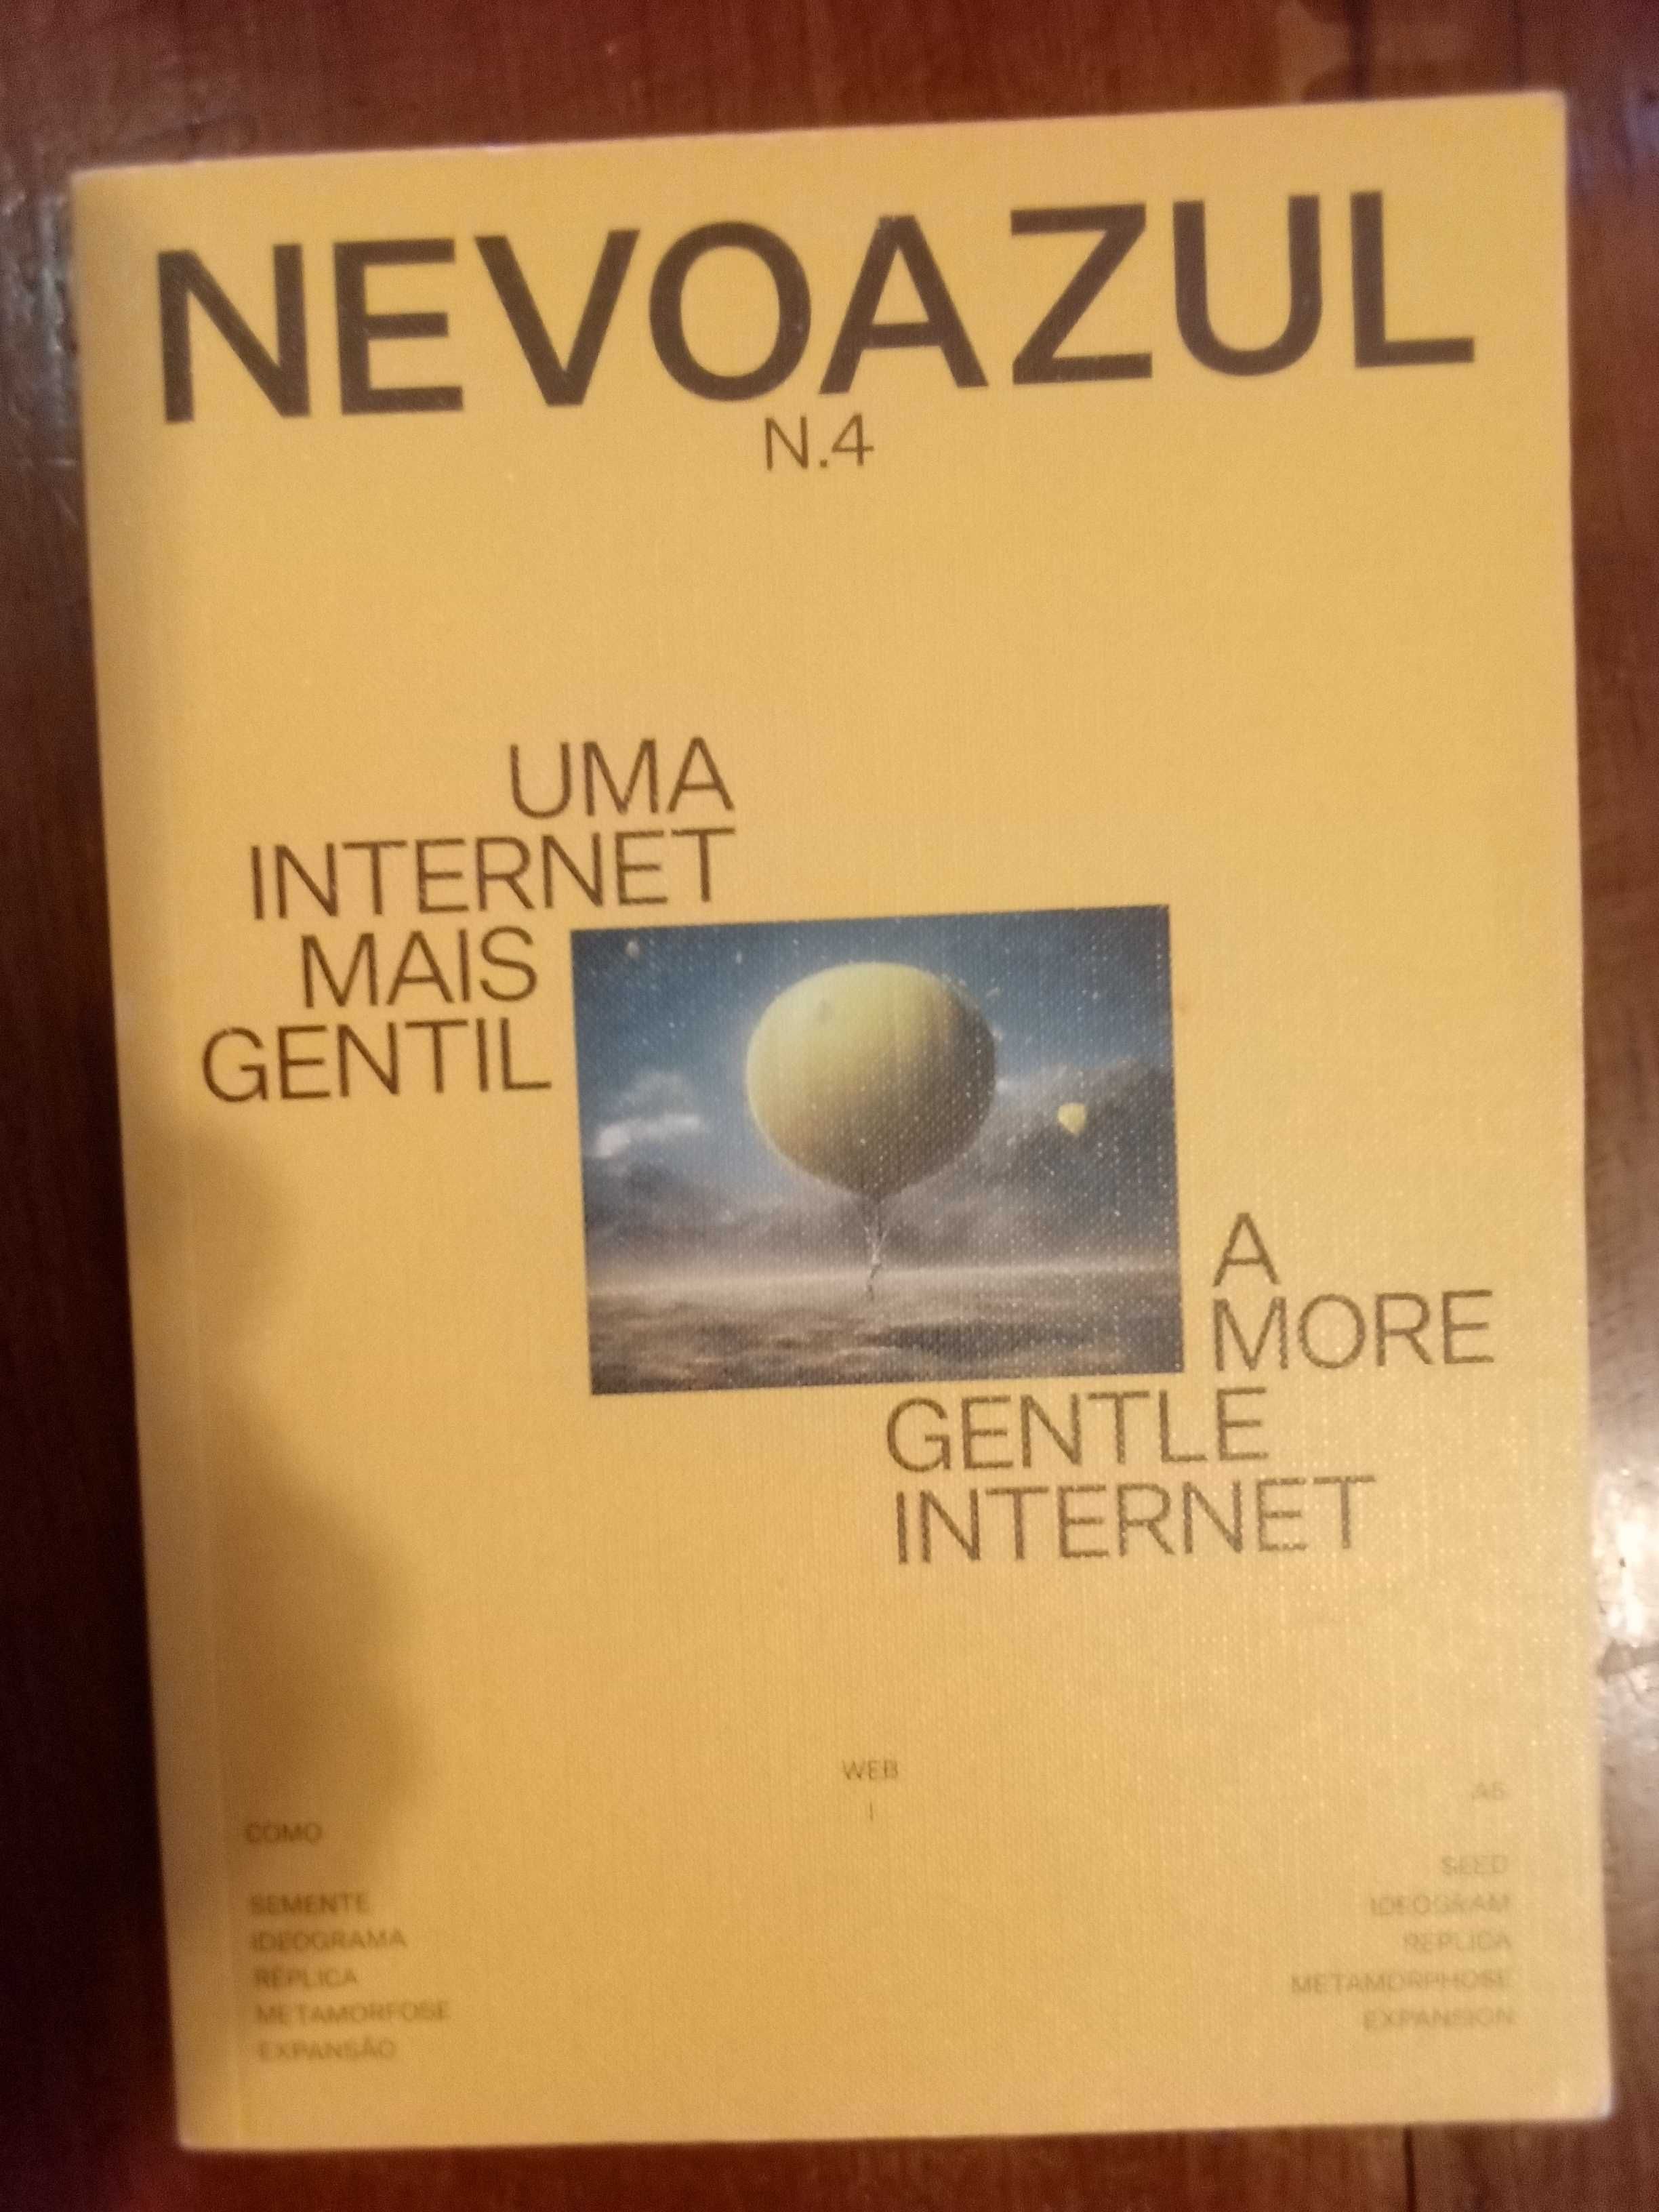 Revista Nevoazul N.º 4 - Uma internet mais gentil